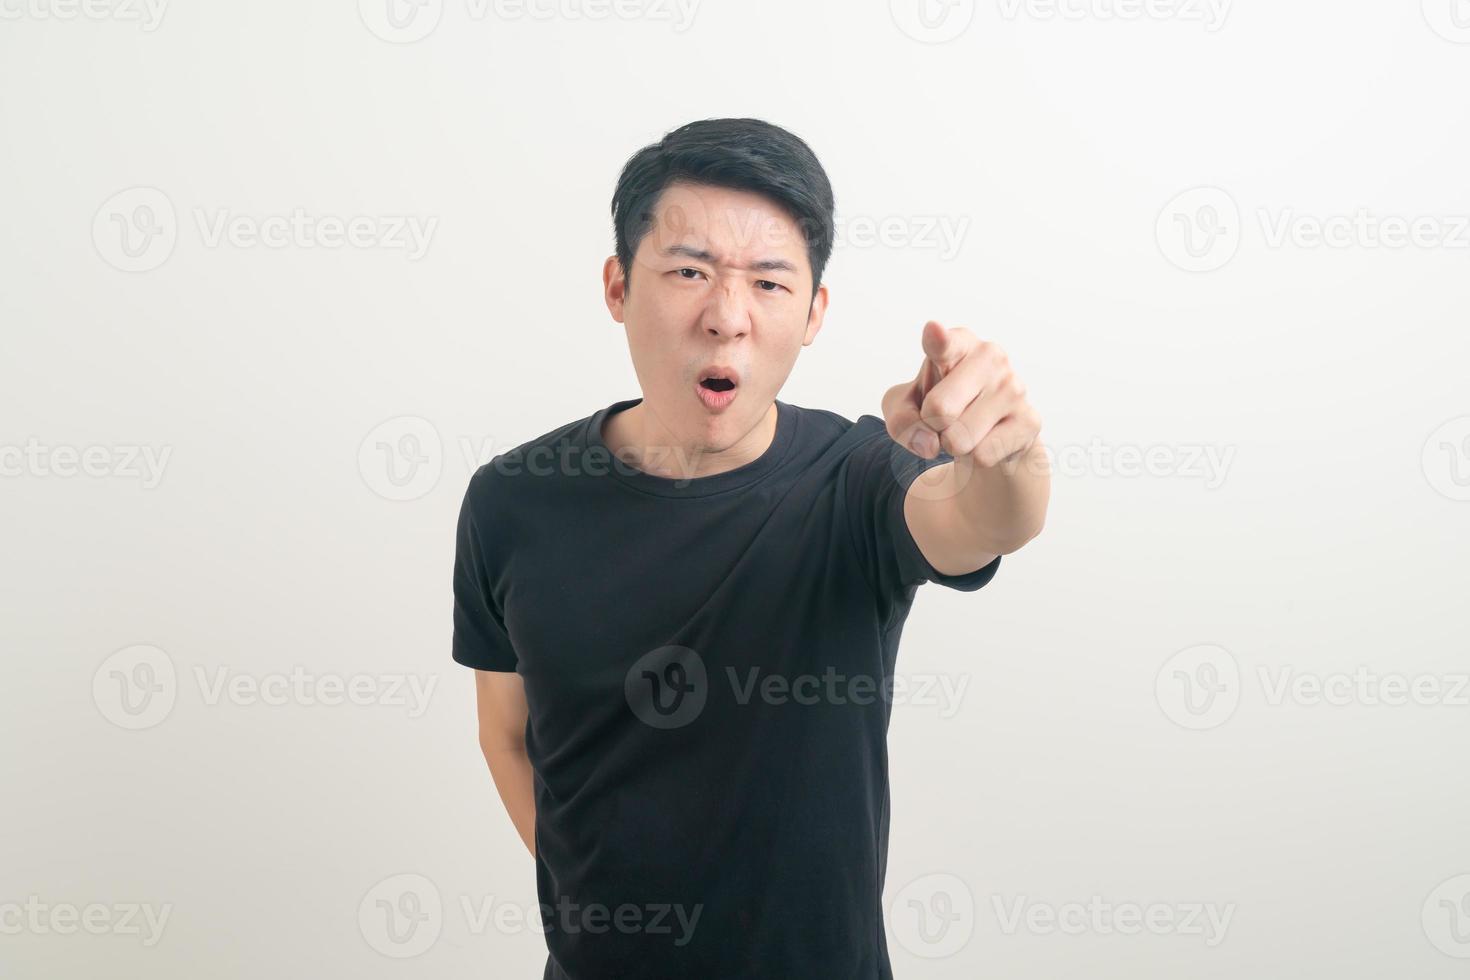 giovane asiatico con la faccia arrabbiata e arrabbiata foto